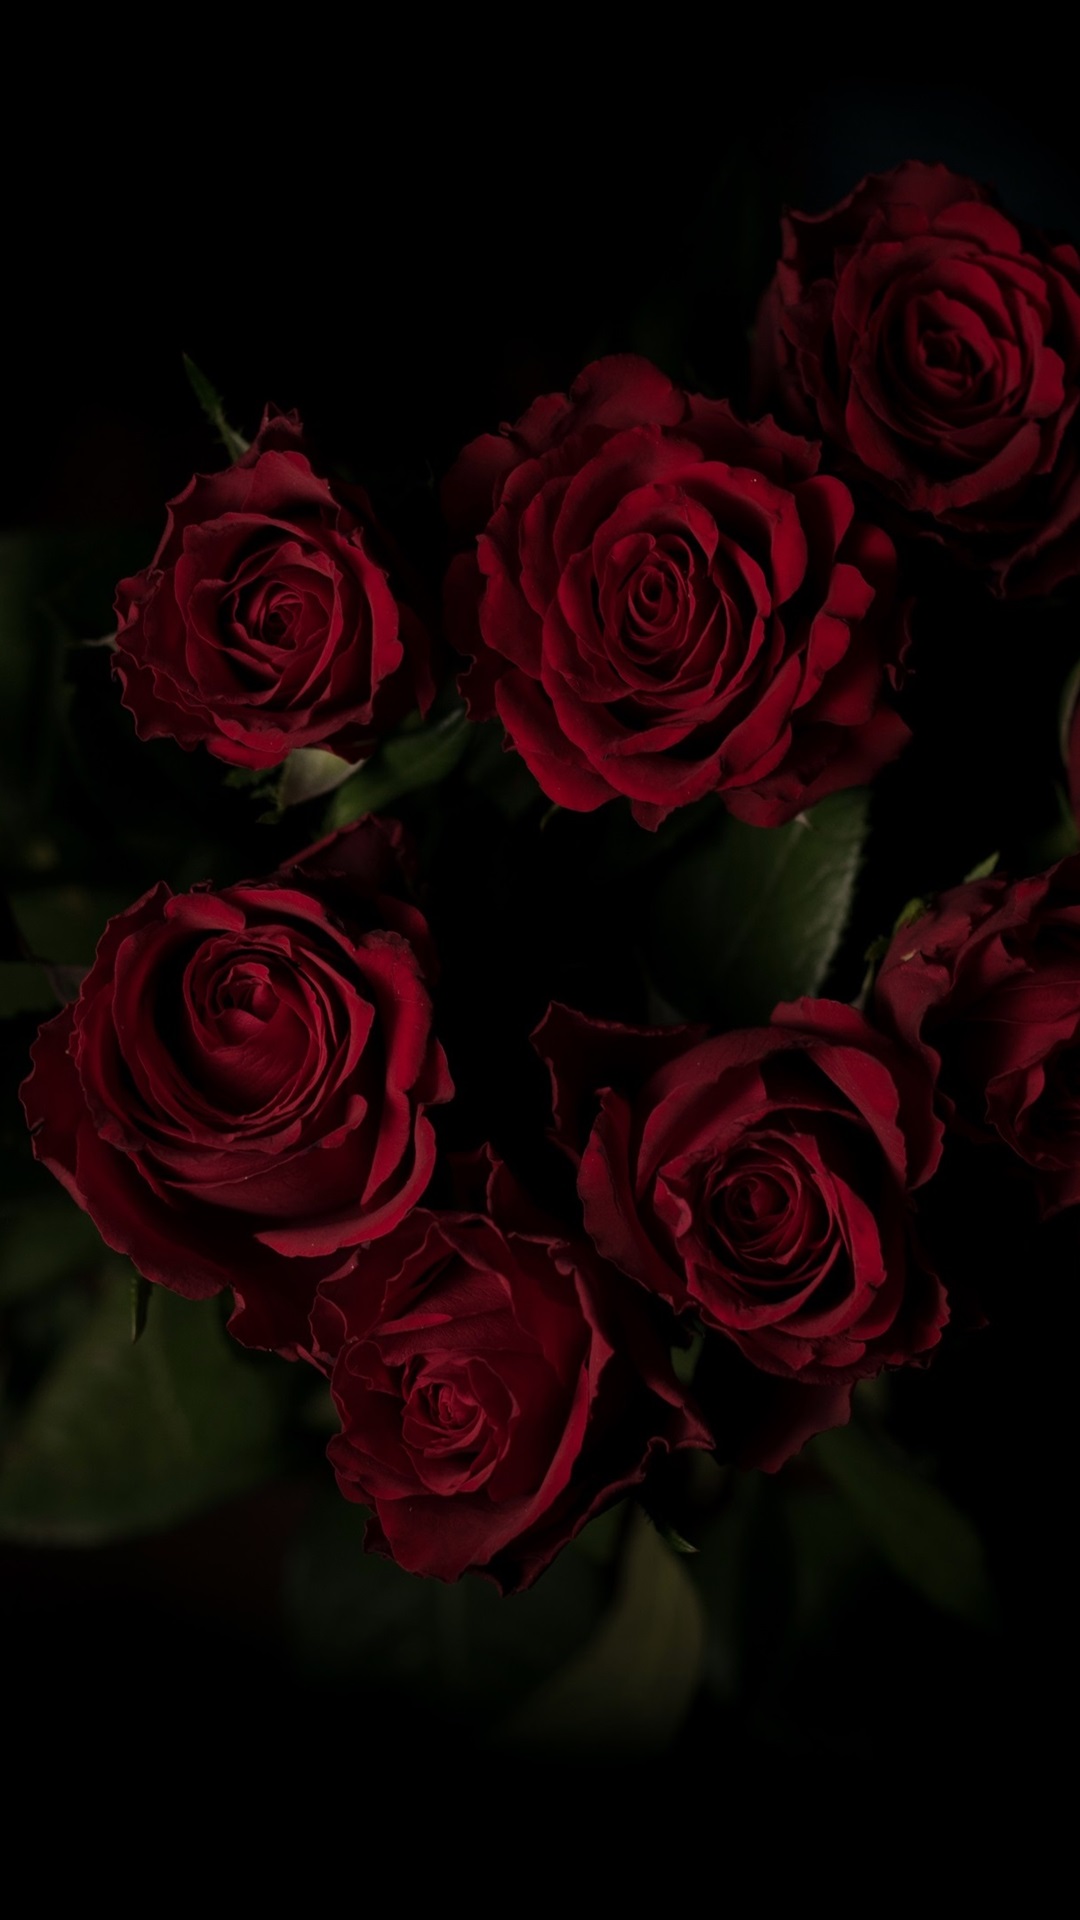 red rose wallpaper,flower,rose,garden roses,flowering plant,red